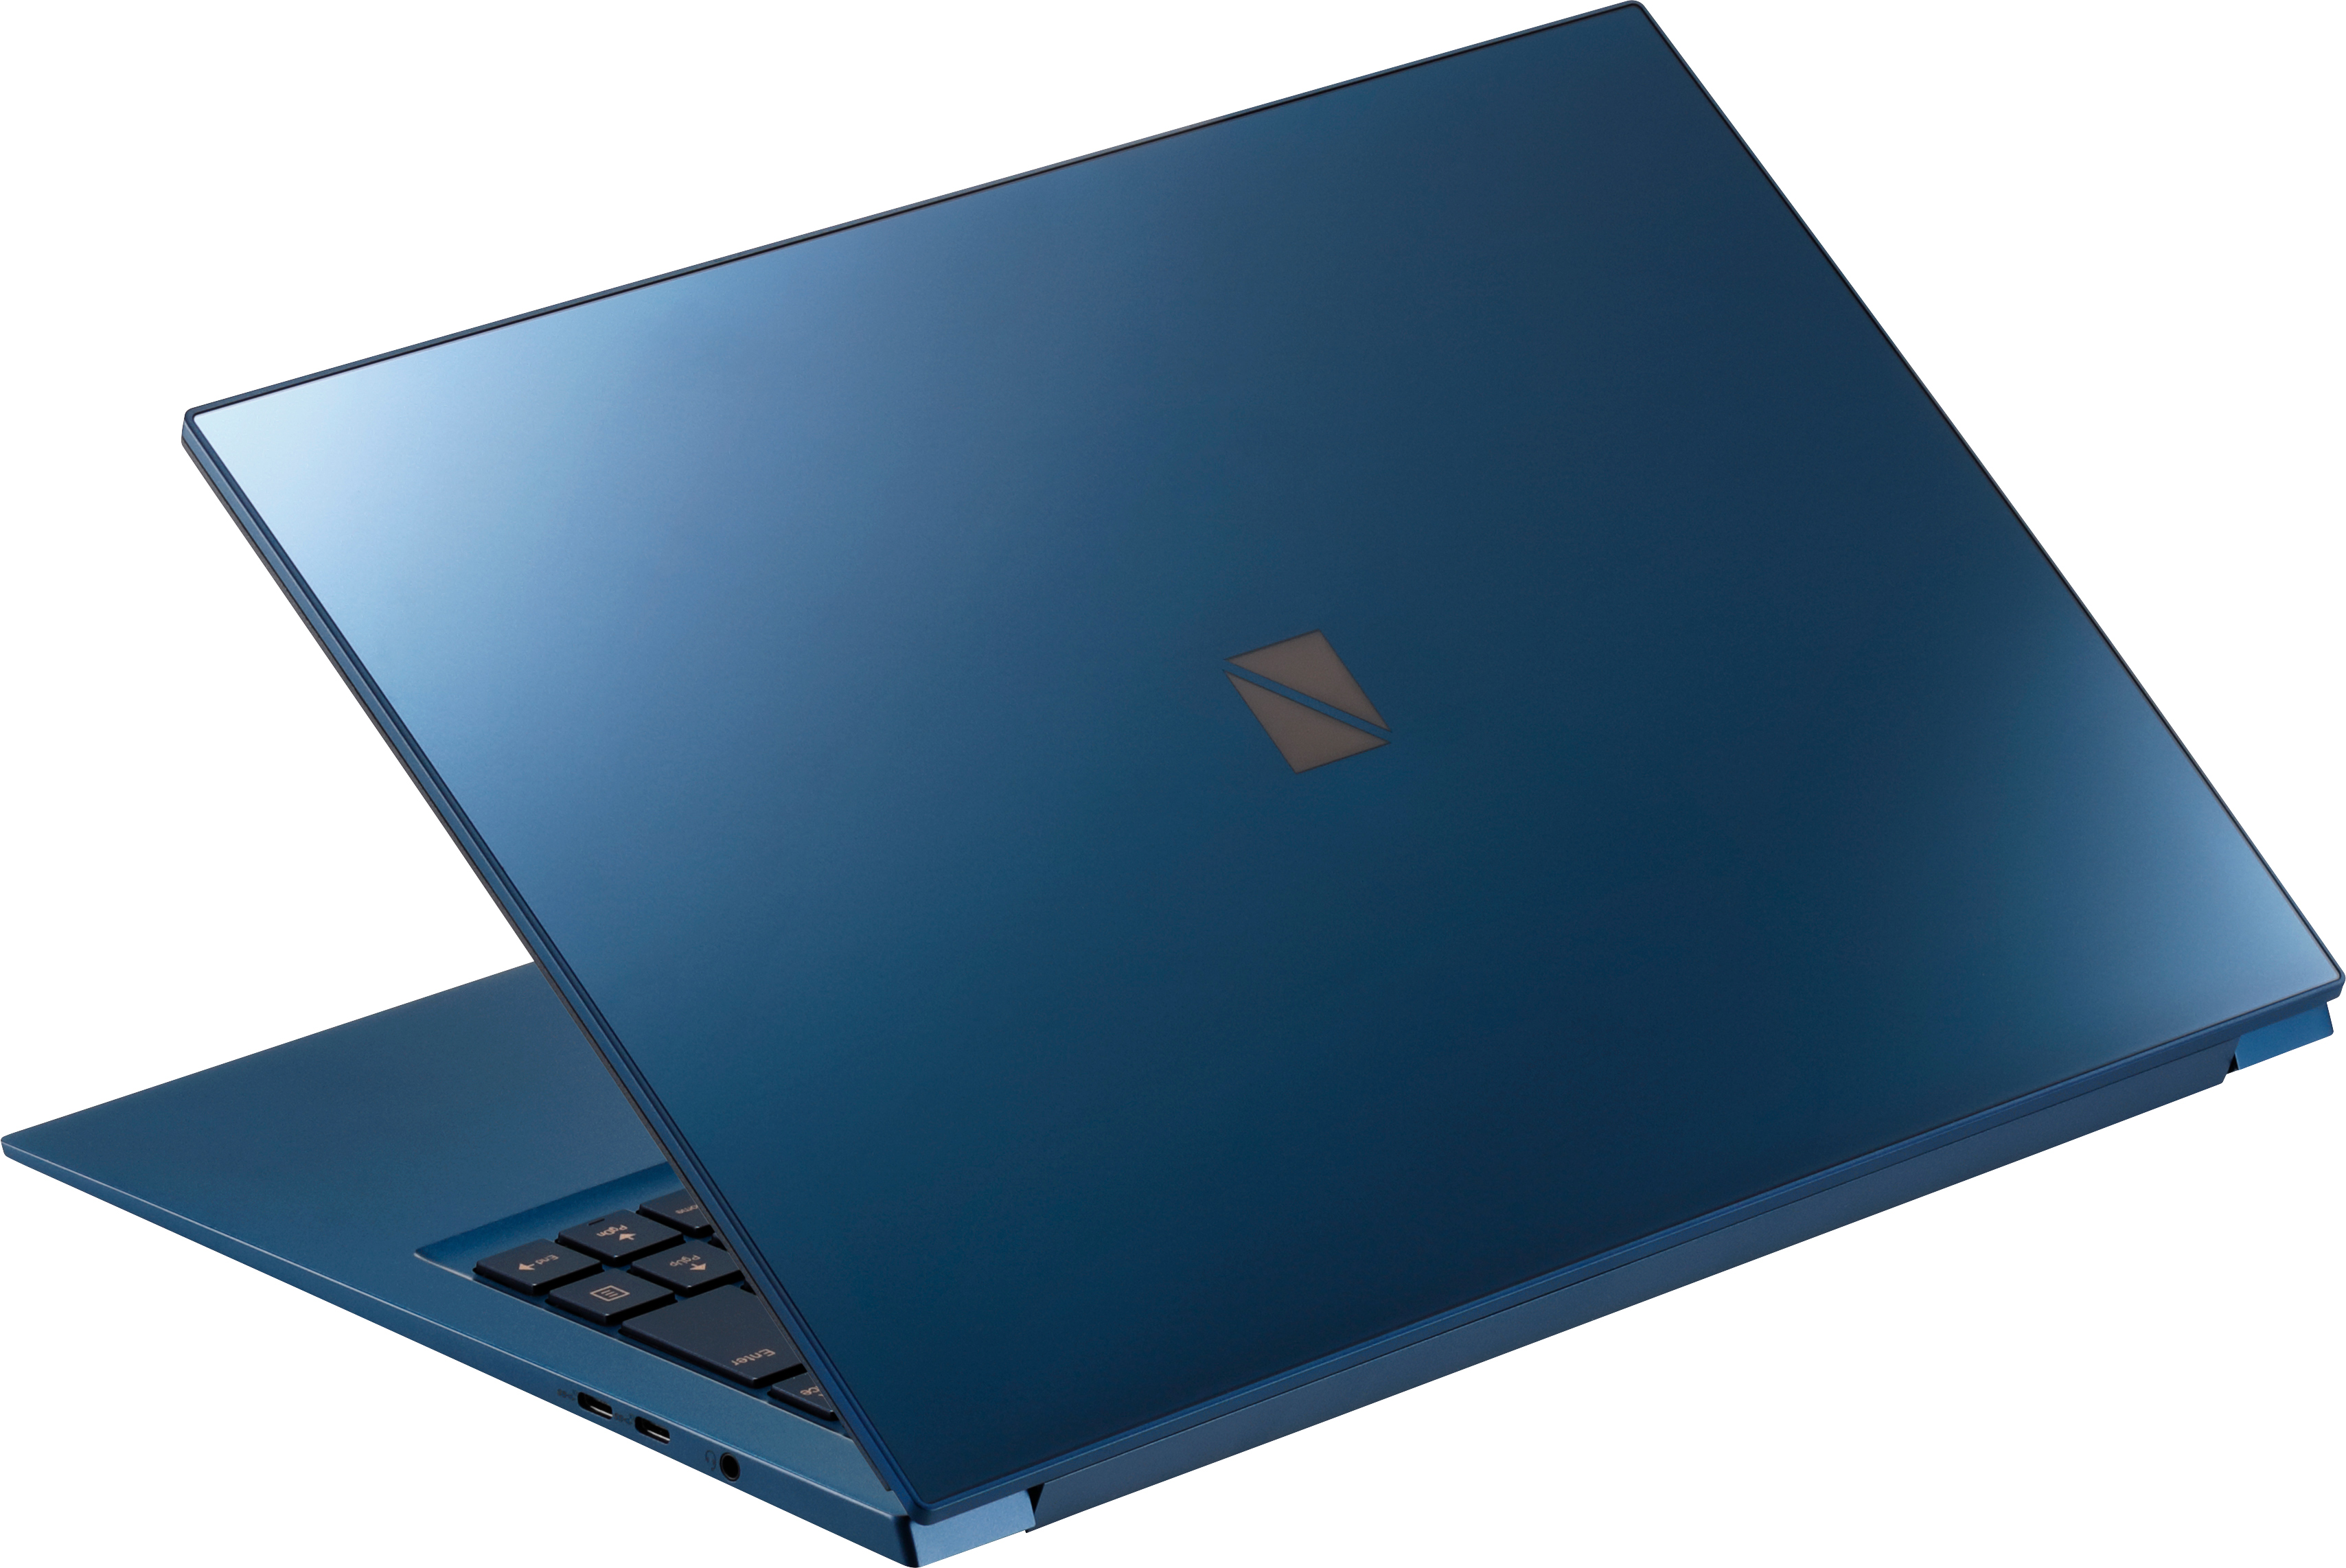 Lenovo Brings NEC PCs Back to USA: Super Light, Sub-2 lbs LaVie 